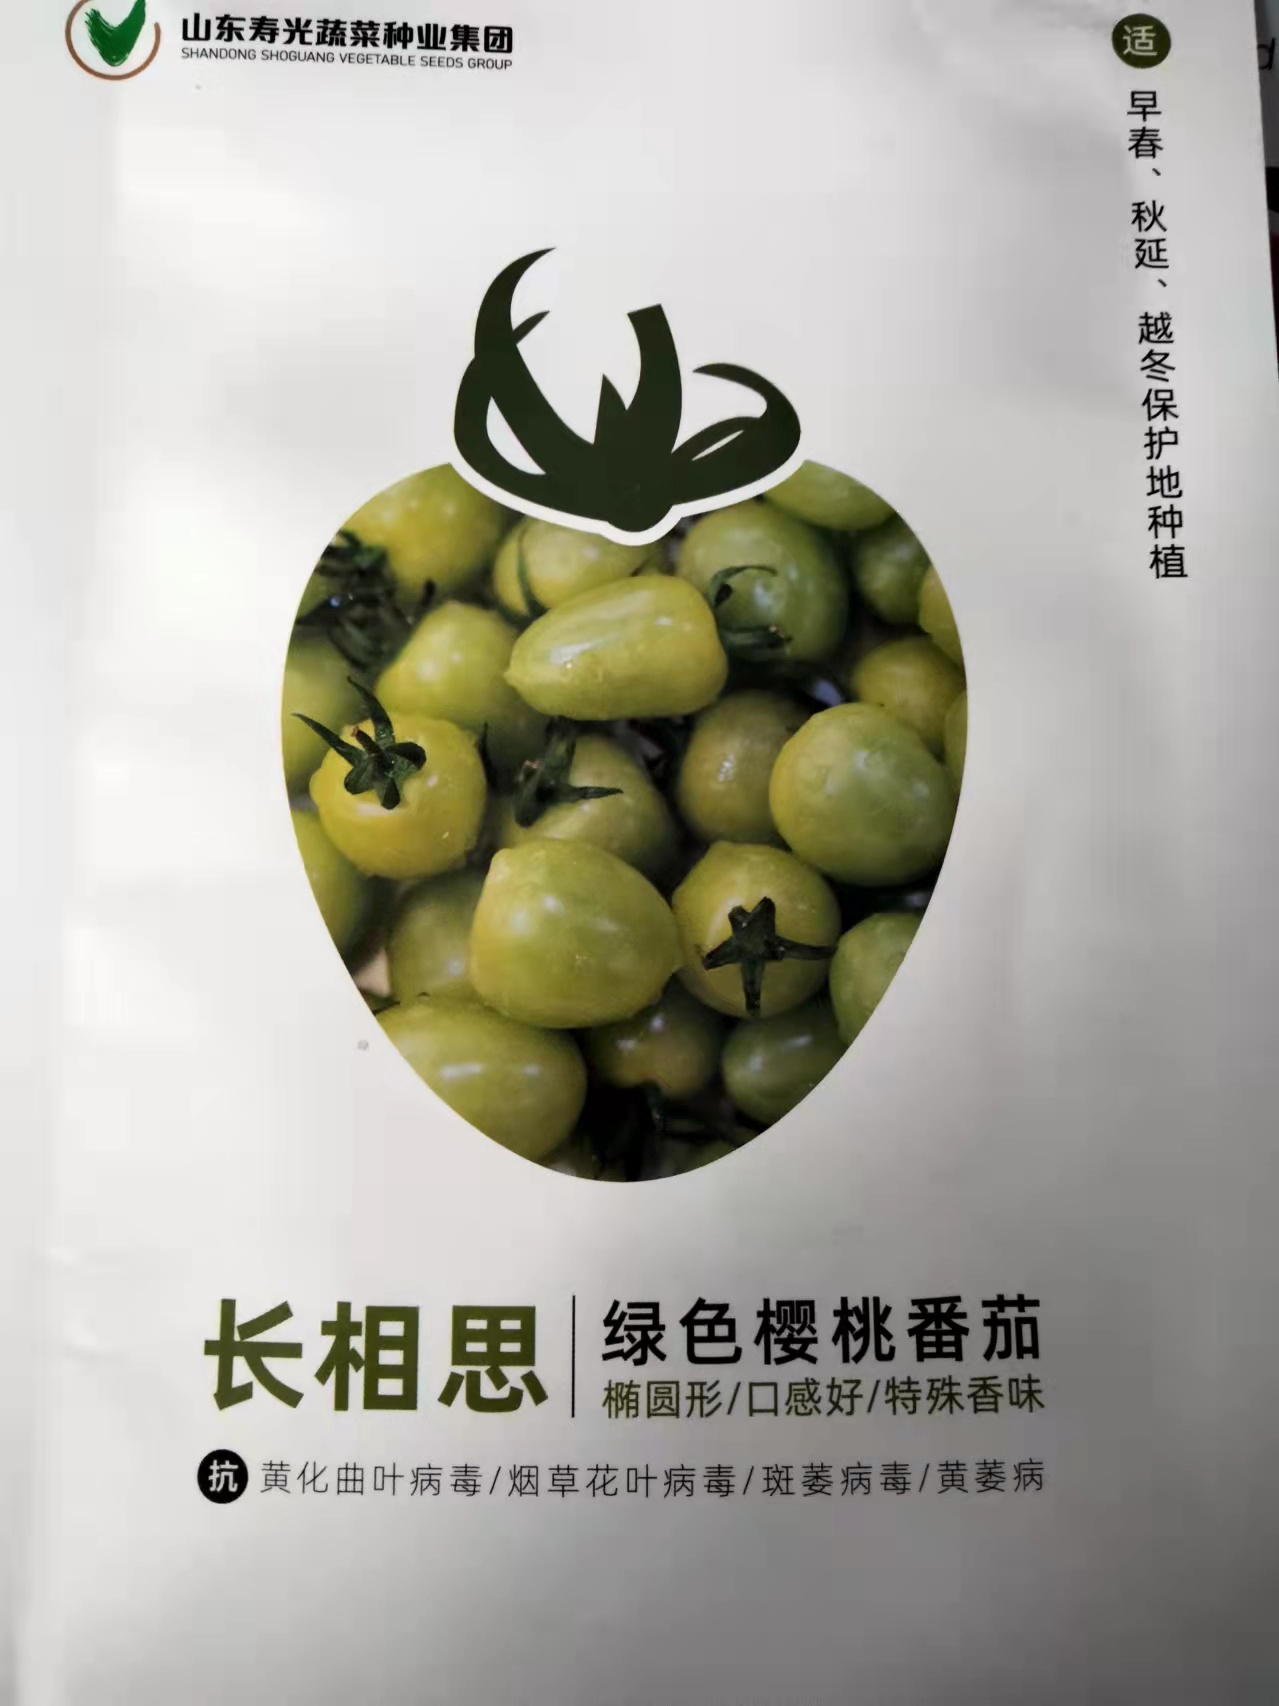 寿光蔬菜种业集团 长相思绿色樱桃番茄种子  椭圆形 口感好 特殊香味 抗病性好